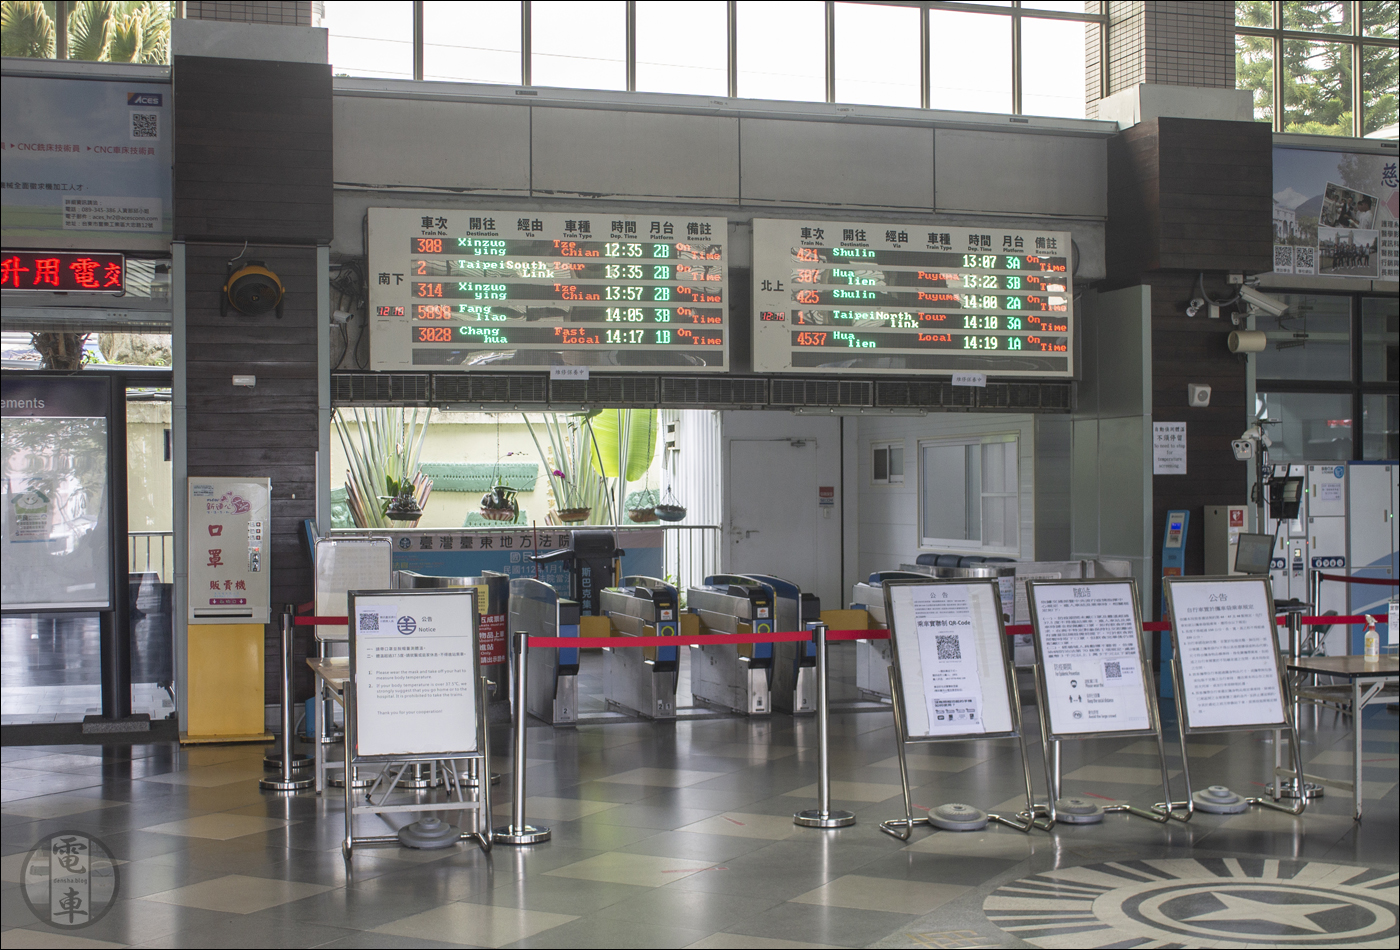 Jegykapuk Taitung állomáson. A jobb oldali kijelzőn 421-es számmal az én járatom is megtalálható már, noha a TRA illetékesei angol fordításról még nem gondoskodtak az EMU3000-es sorozat által kiszolgált járatok számára.